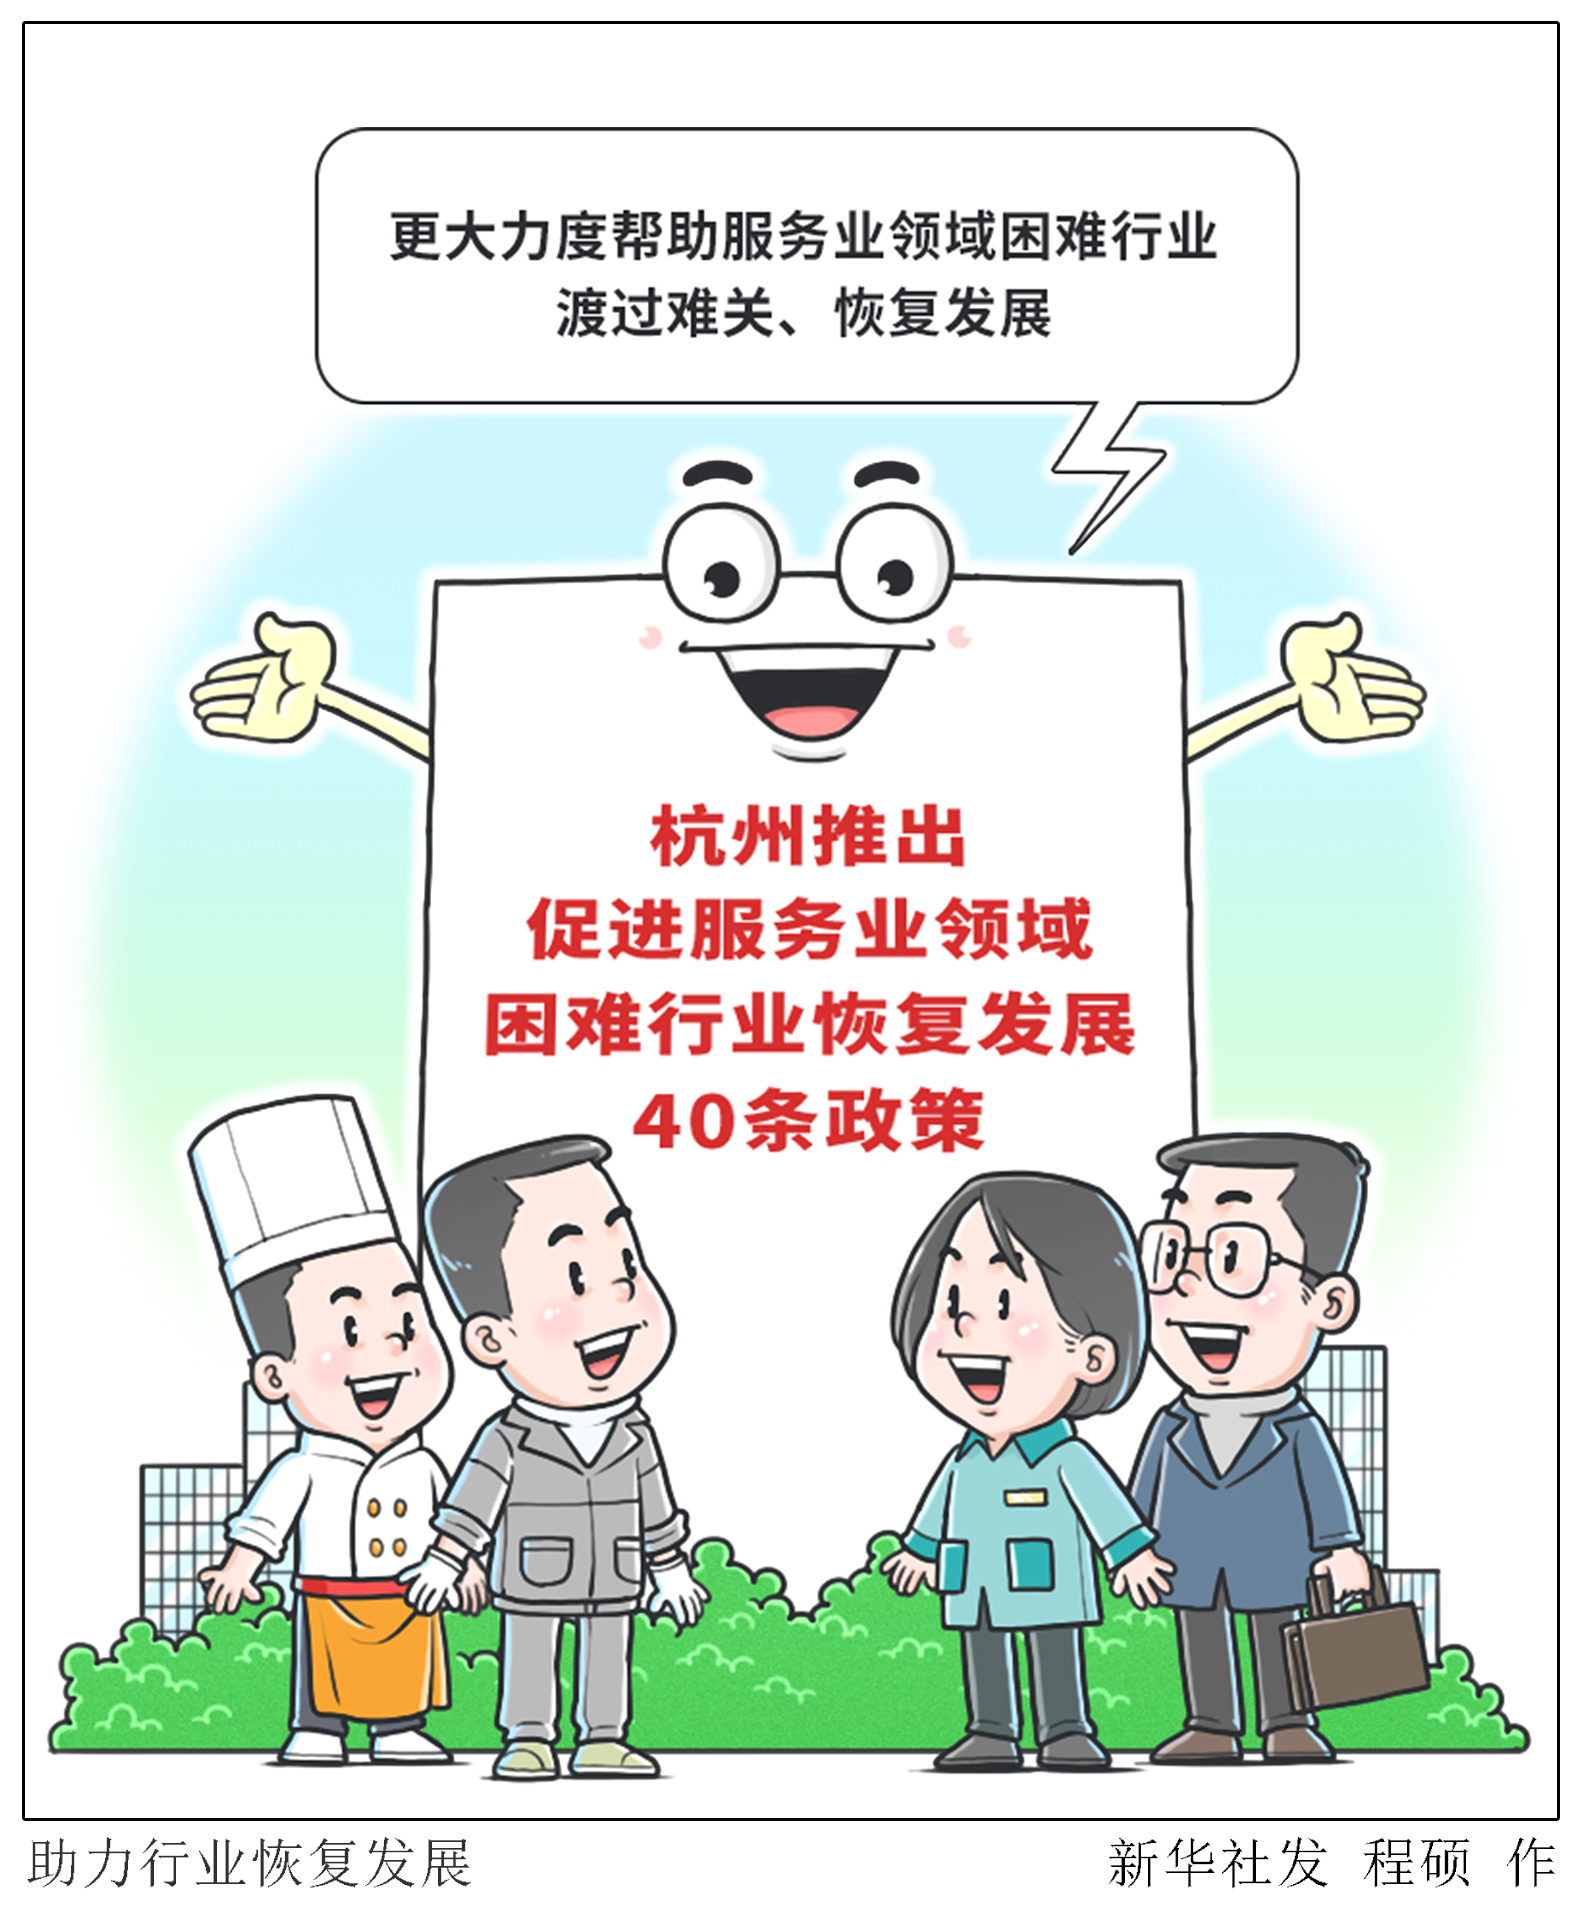 杭州推出促进服务业领域困难行业恢复发展40条政策